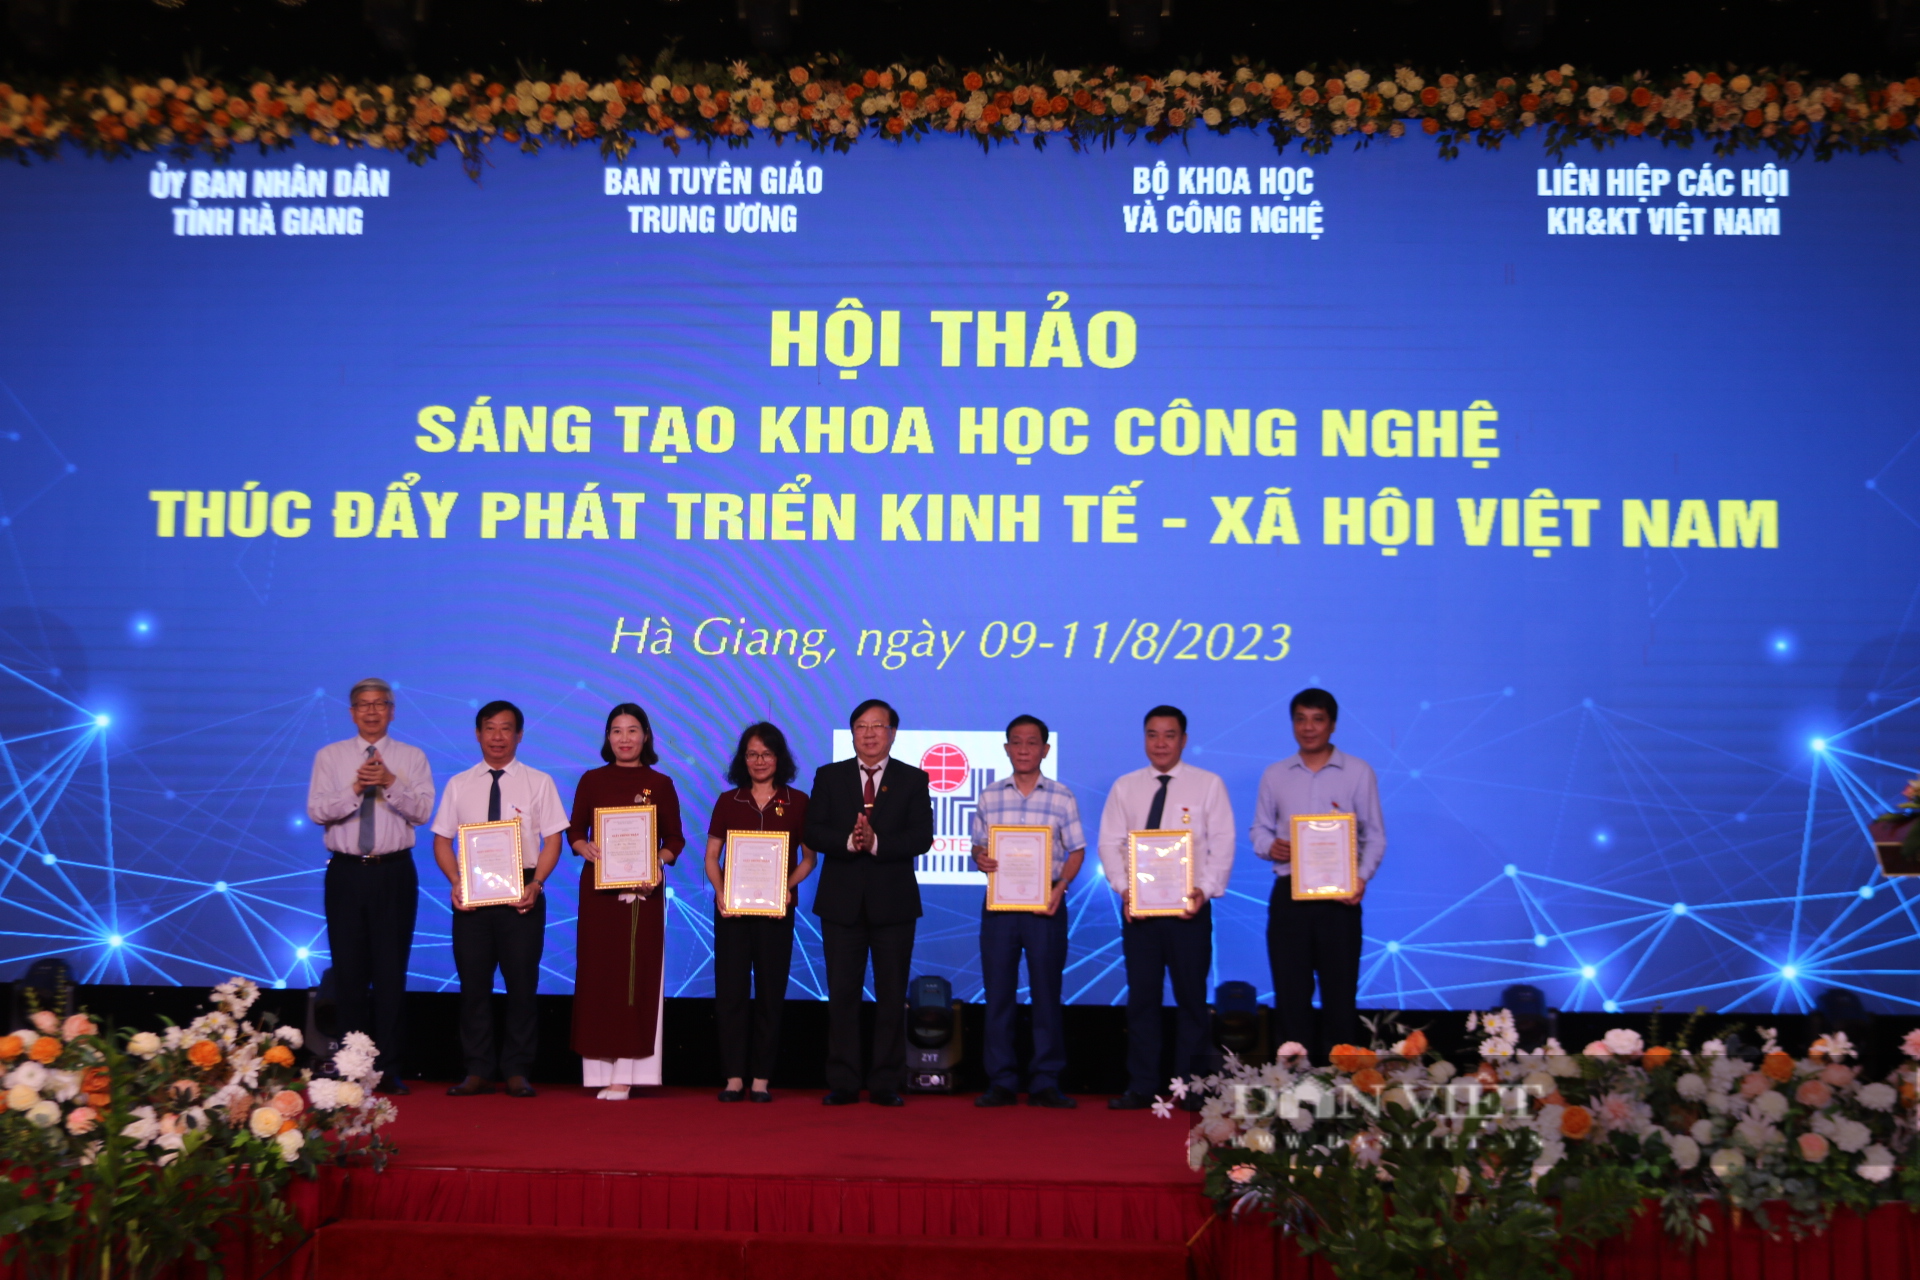 Sáng tạo khoa học công nghệ thúc đẩy phát triển kinh tế - xã hội Việt Nam - Ảnh 6.